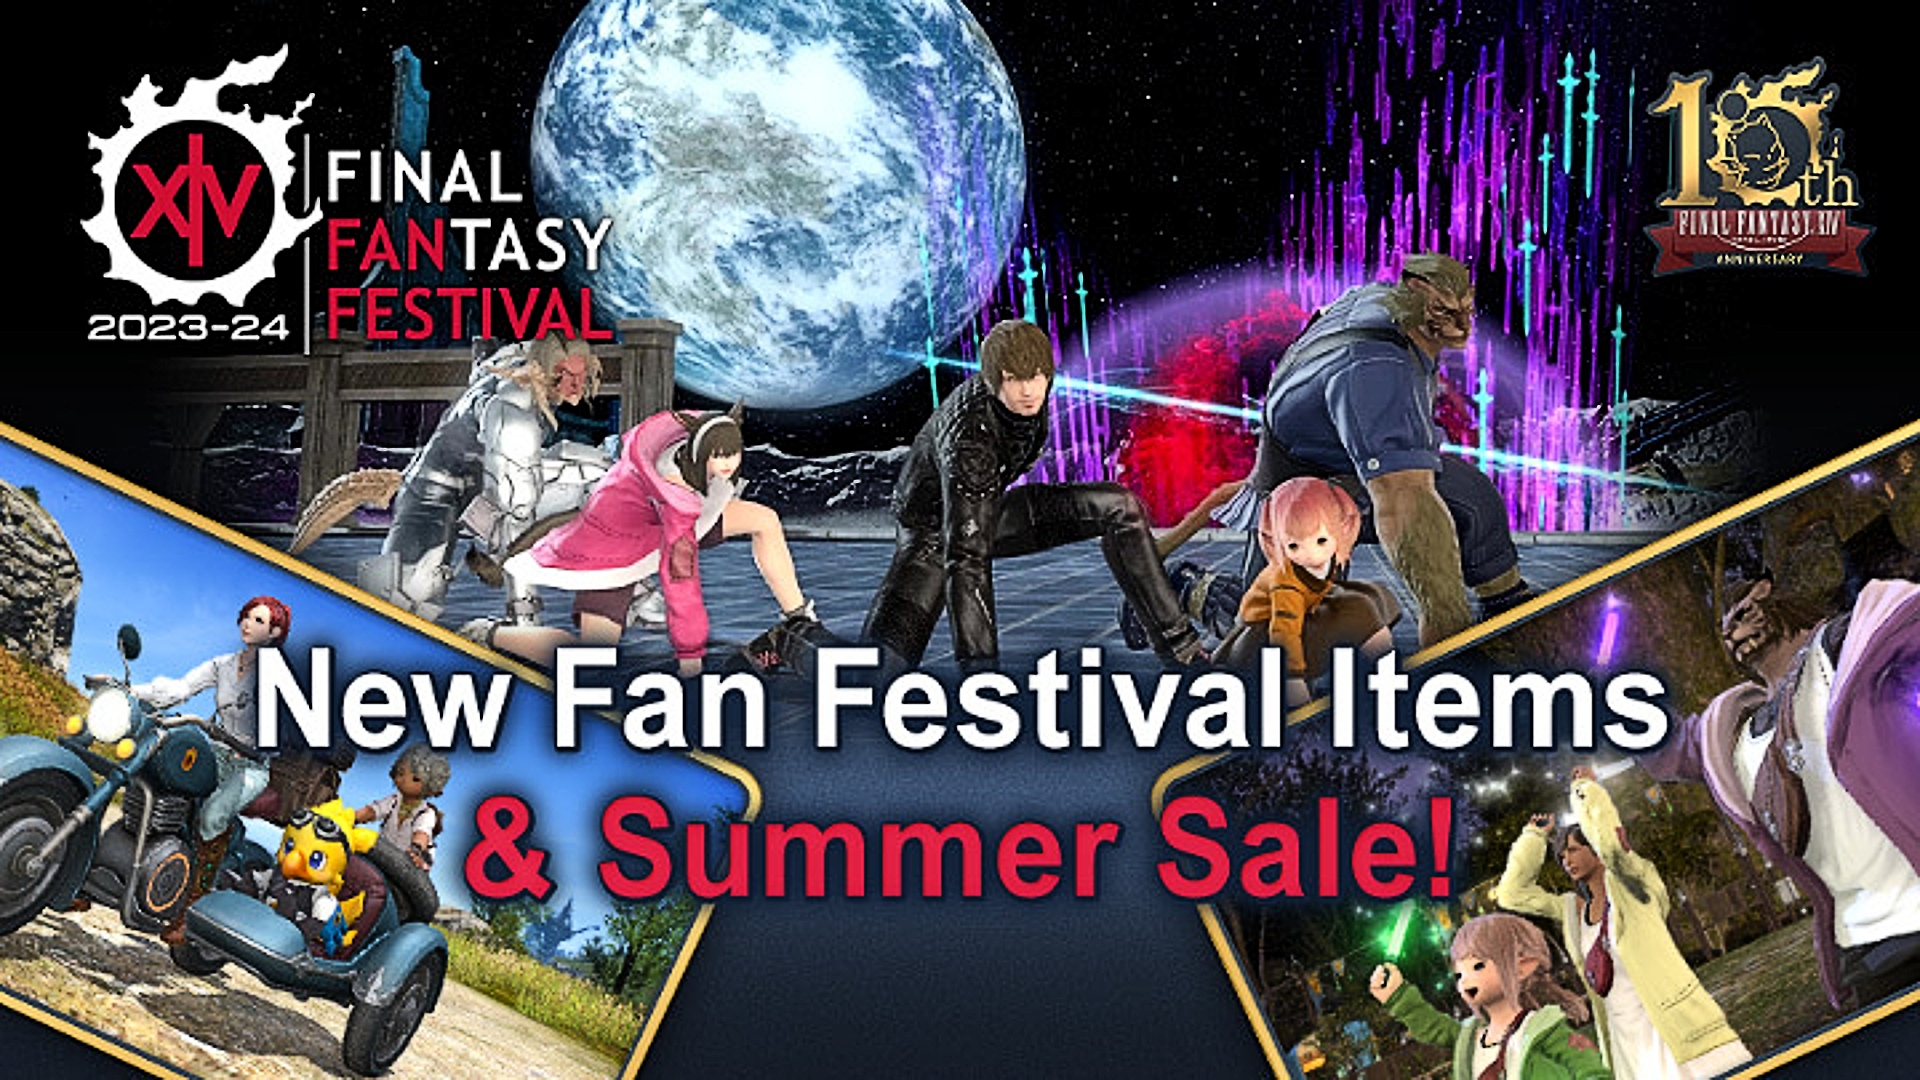 Eine FFXIV-Werbung, in der die neuen optionalen Artikel zum Thema Fan Festival zum Kauf vorgestellt werden